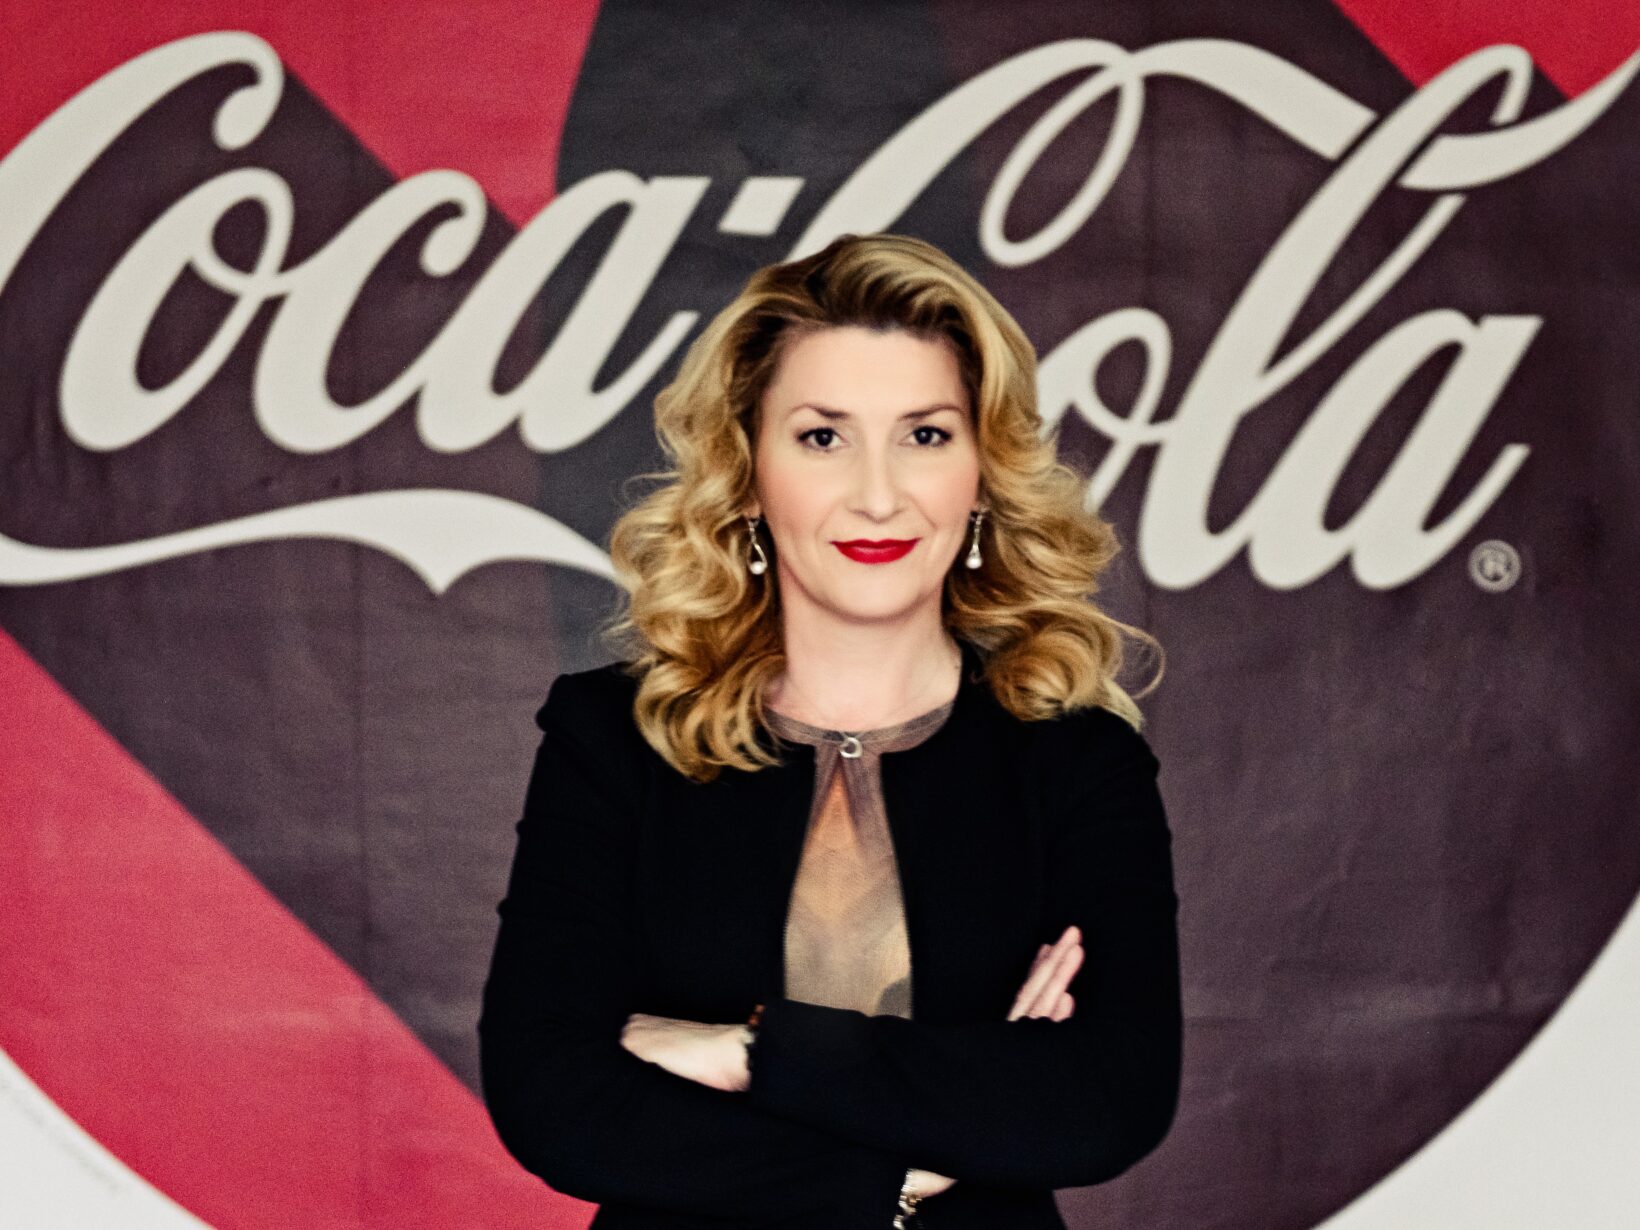 Ruža Tomić Fontana nową dyrektorką generalną Coca-Cola HBC Polska i kraje bałtyckie